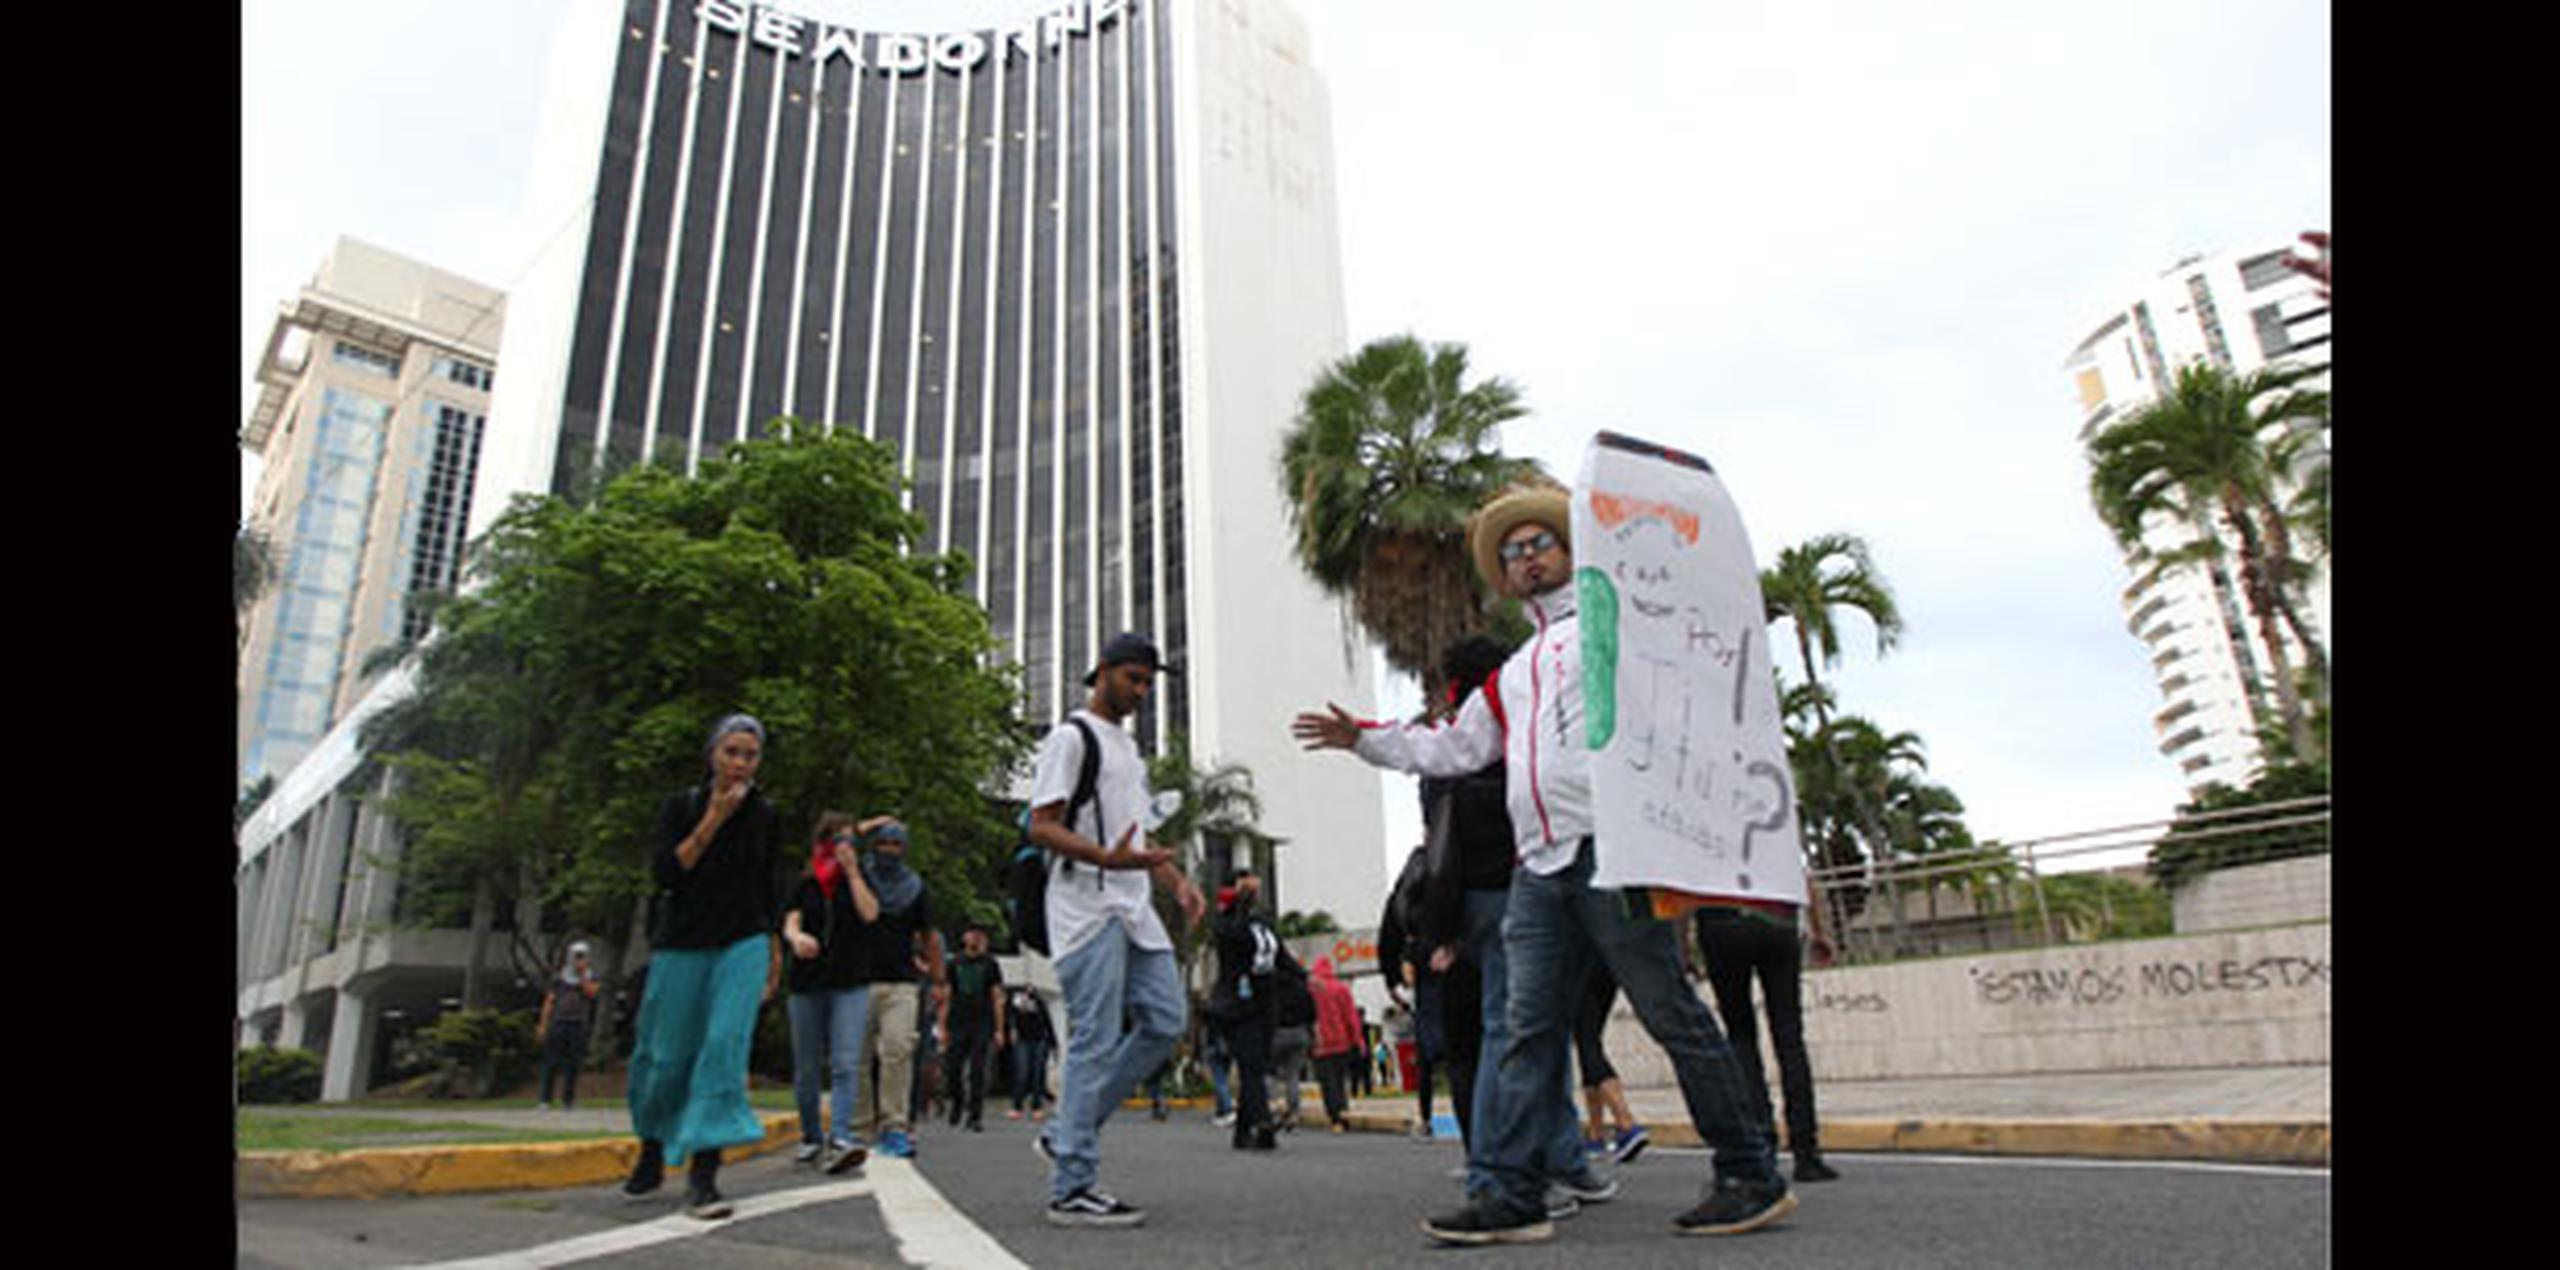 Se informó que paredes de algunos edificios amanecieron pintadas con mensajes en contra de los recortes propuestos para la Universidad de Puerto Rico. (alex.figueroa@gfrmedia.com)